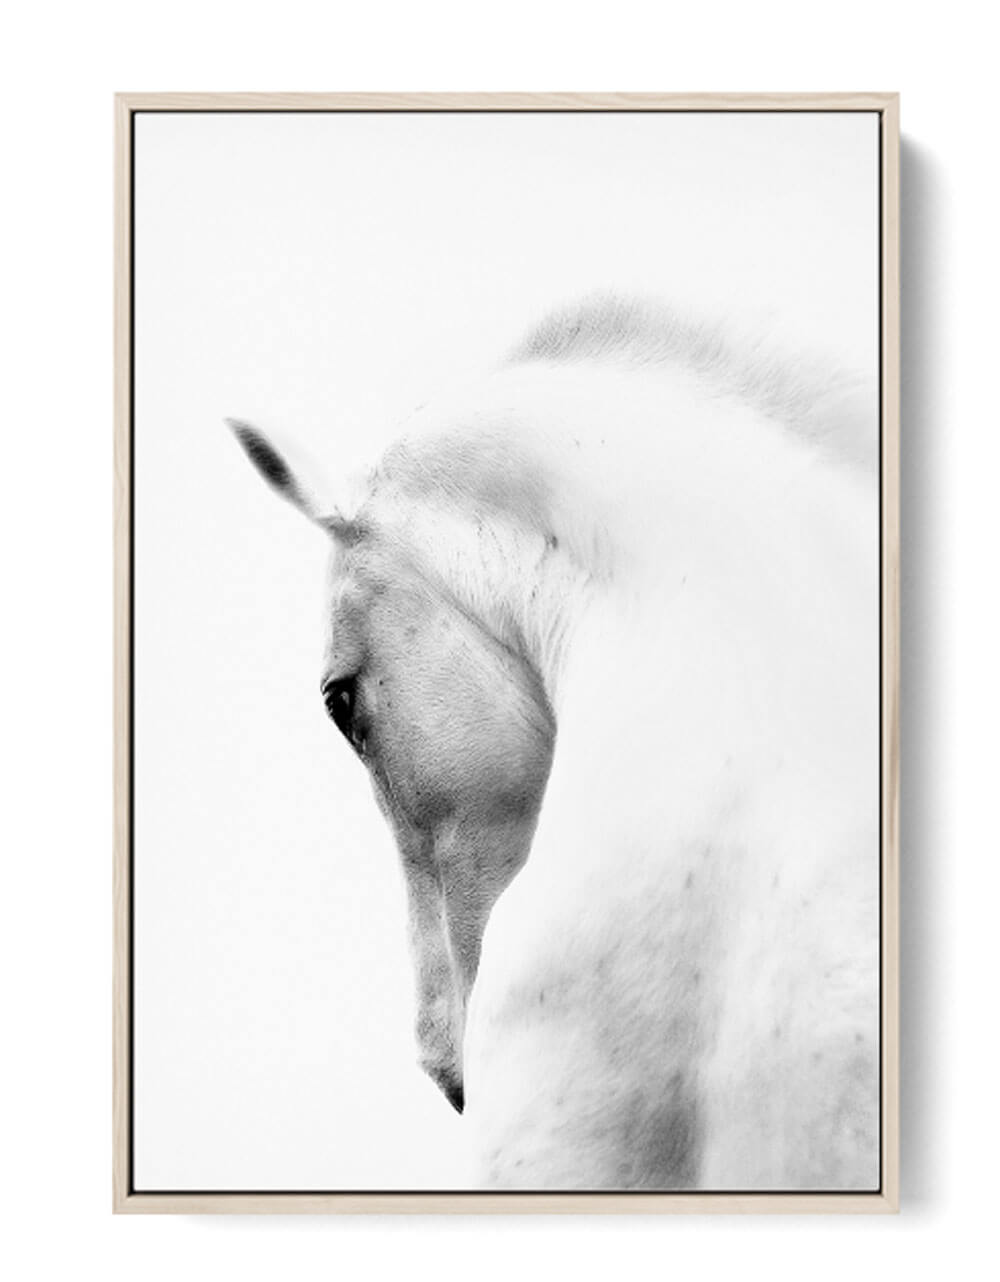 Stunning Spanish White Horse Portrait printable nonahiko art print 0242